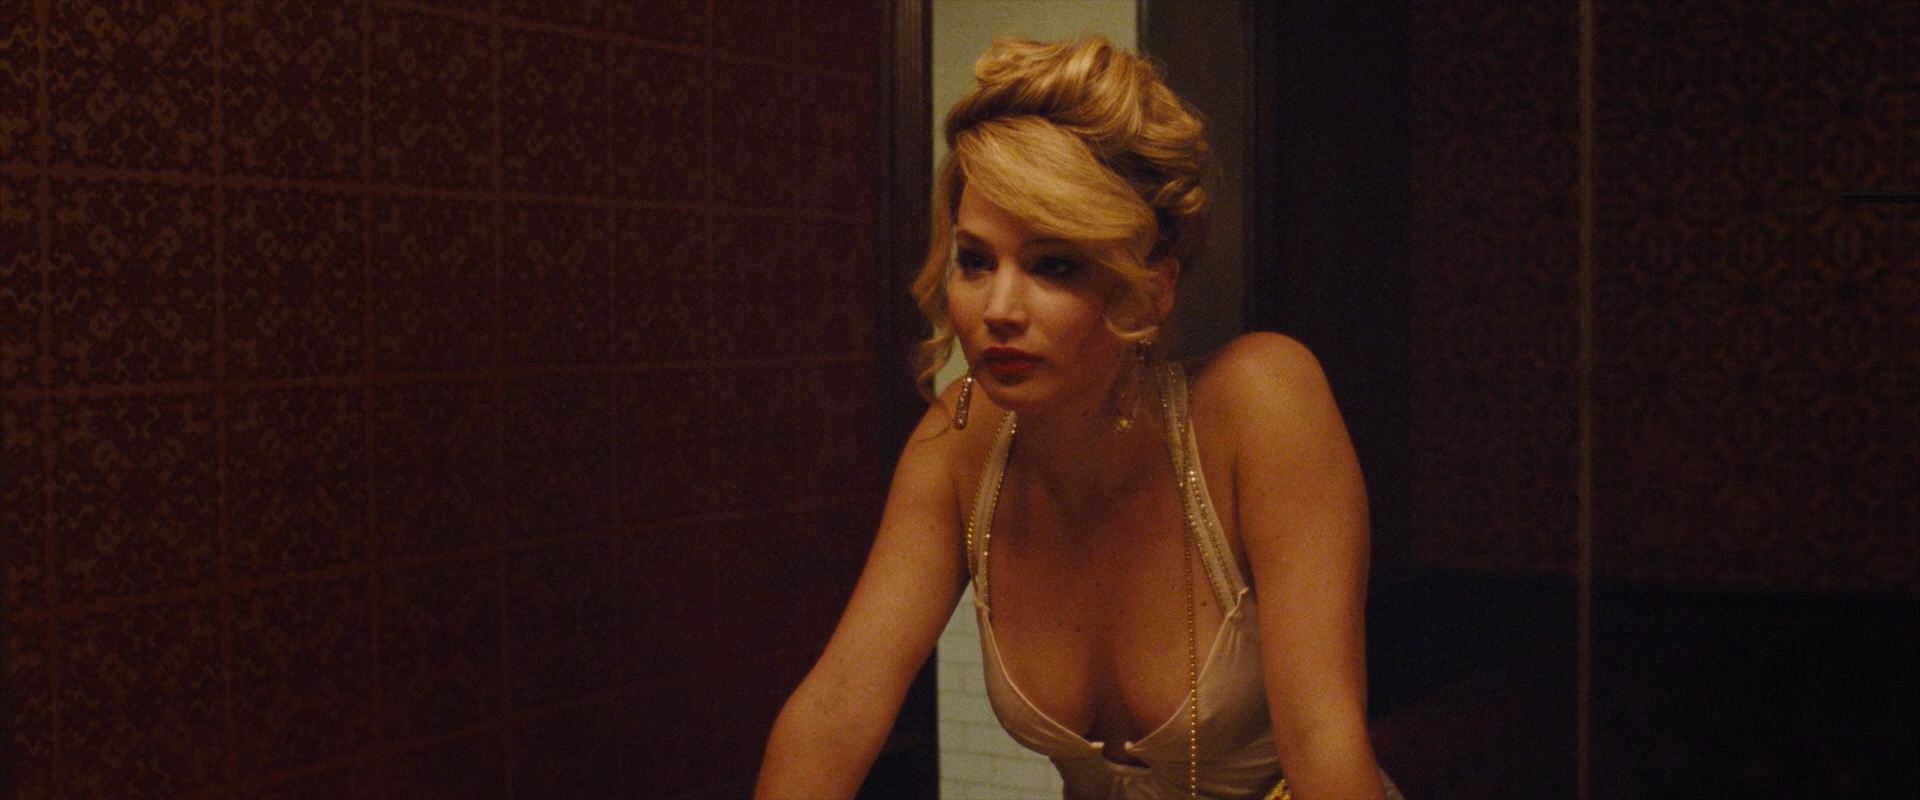 Watch Online - Jennifer Lawrence – American Hustle (2013 ...